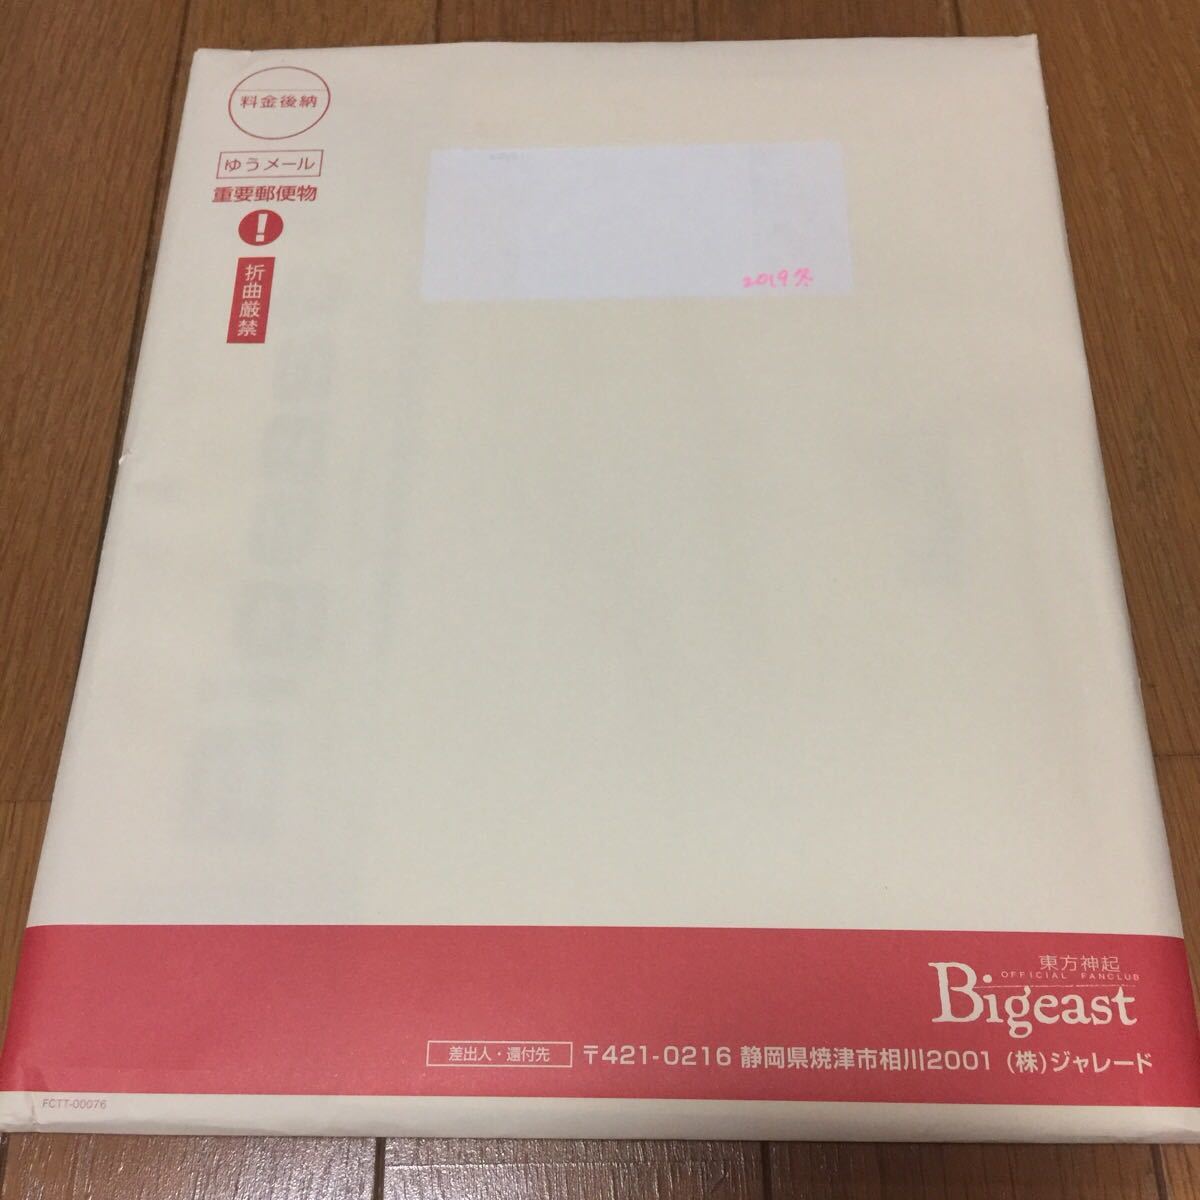 東方神起 Bigeast Magazine 2019 WINTER 会報